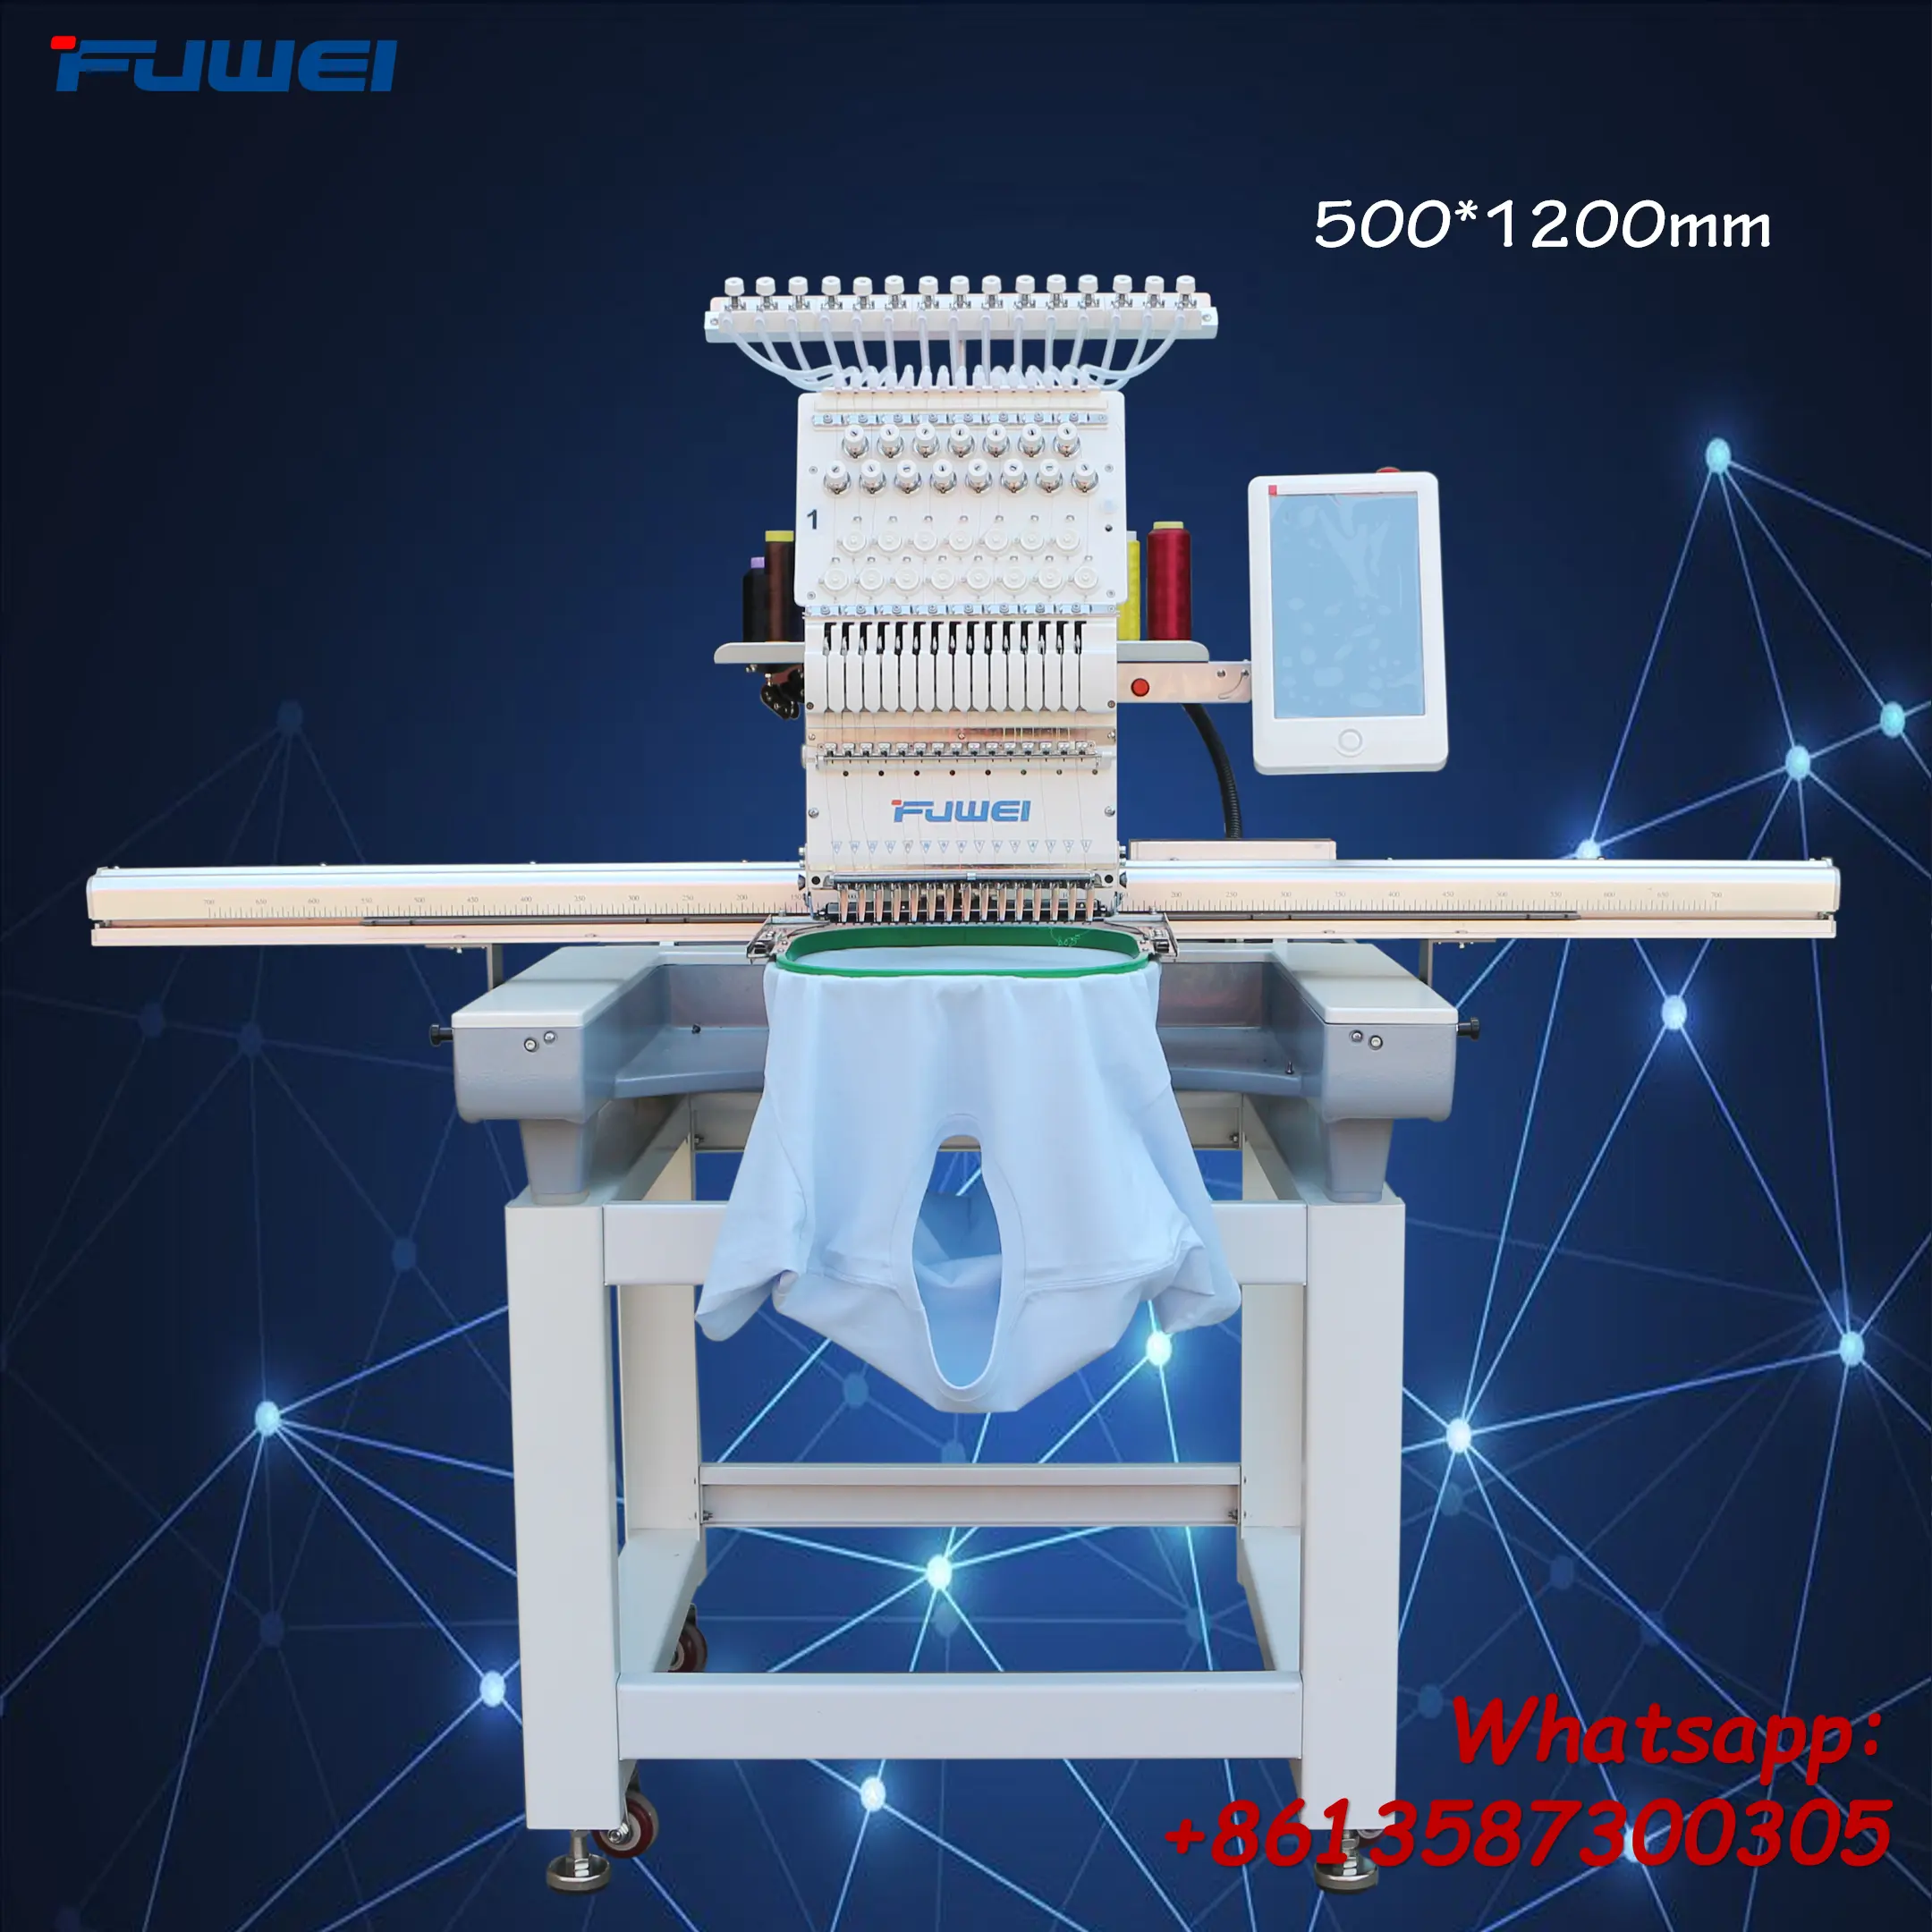 Xingyue-máquina de bordar plana de una cabeza, área más grande, al mejor precio de fábrica, como la marca fuwei